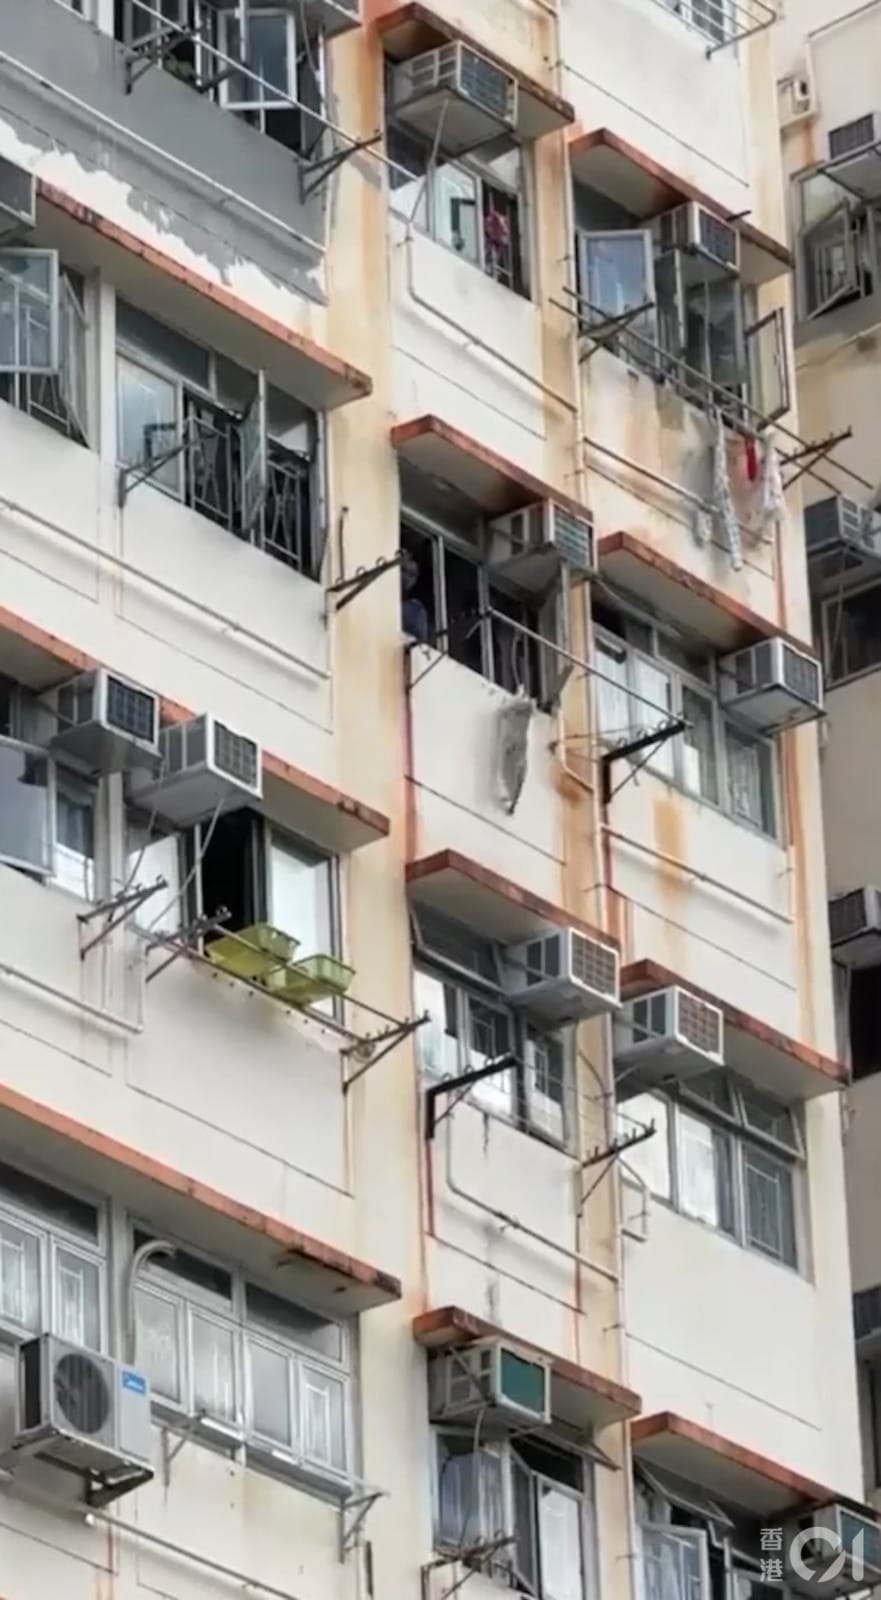 猫爬出7楼窗外掉下6楼 要跳回去却失足坠楼毙命 2